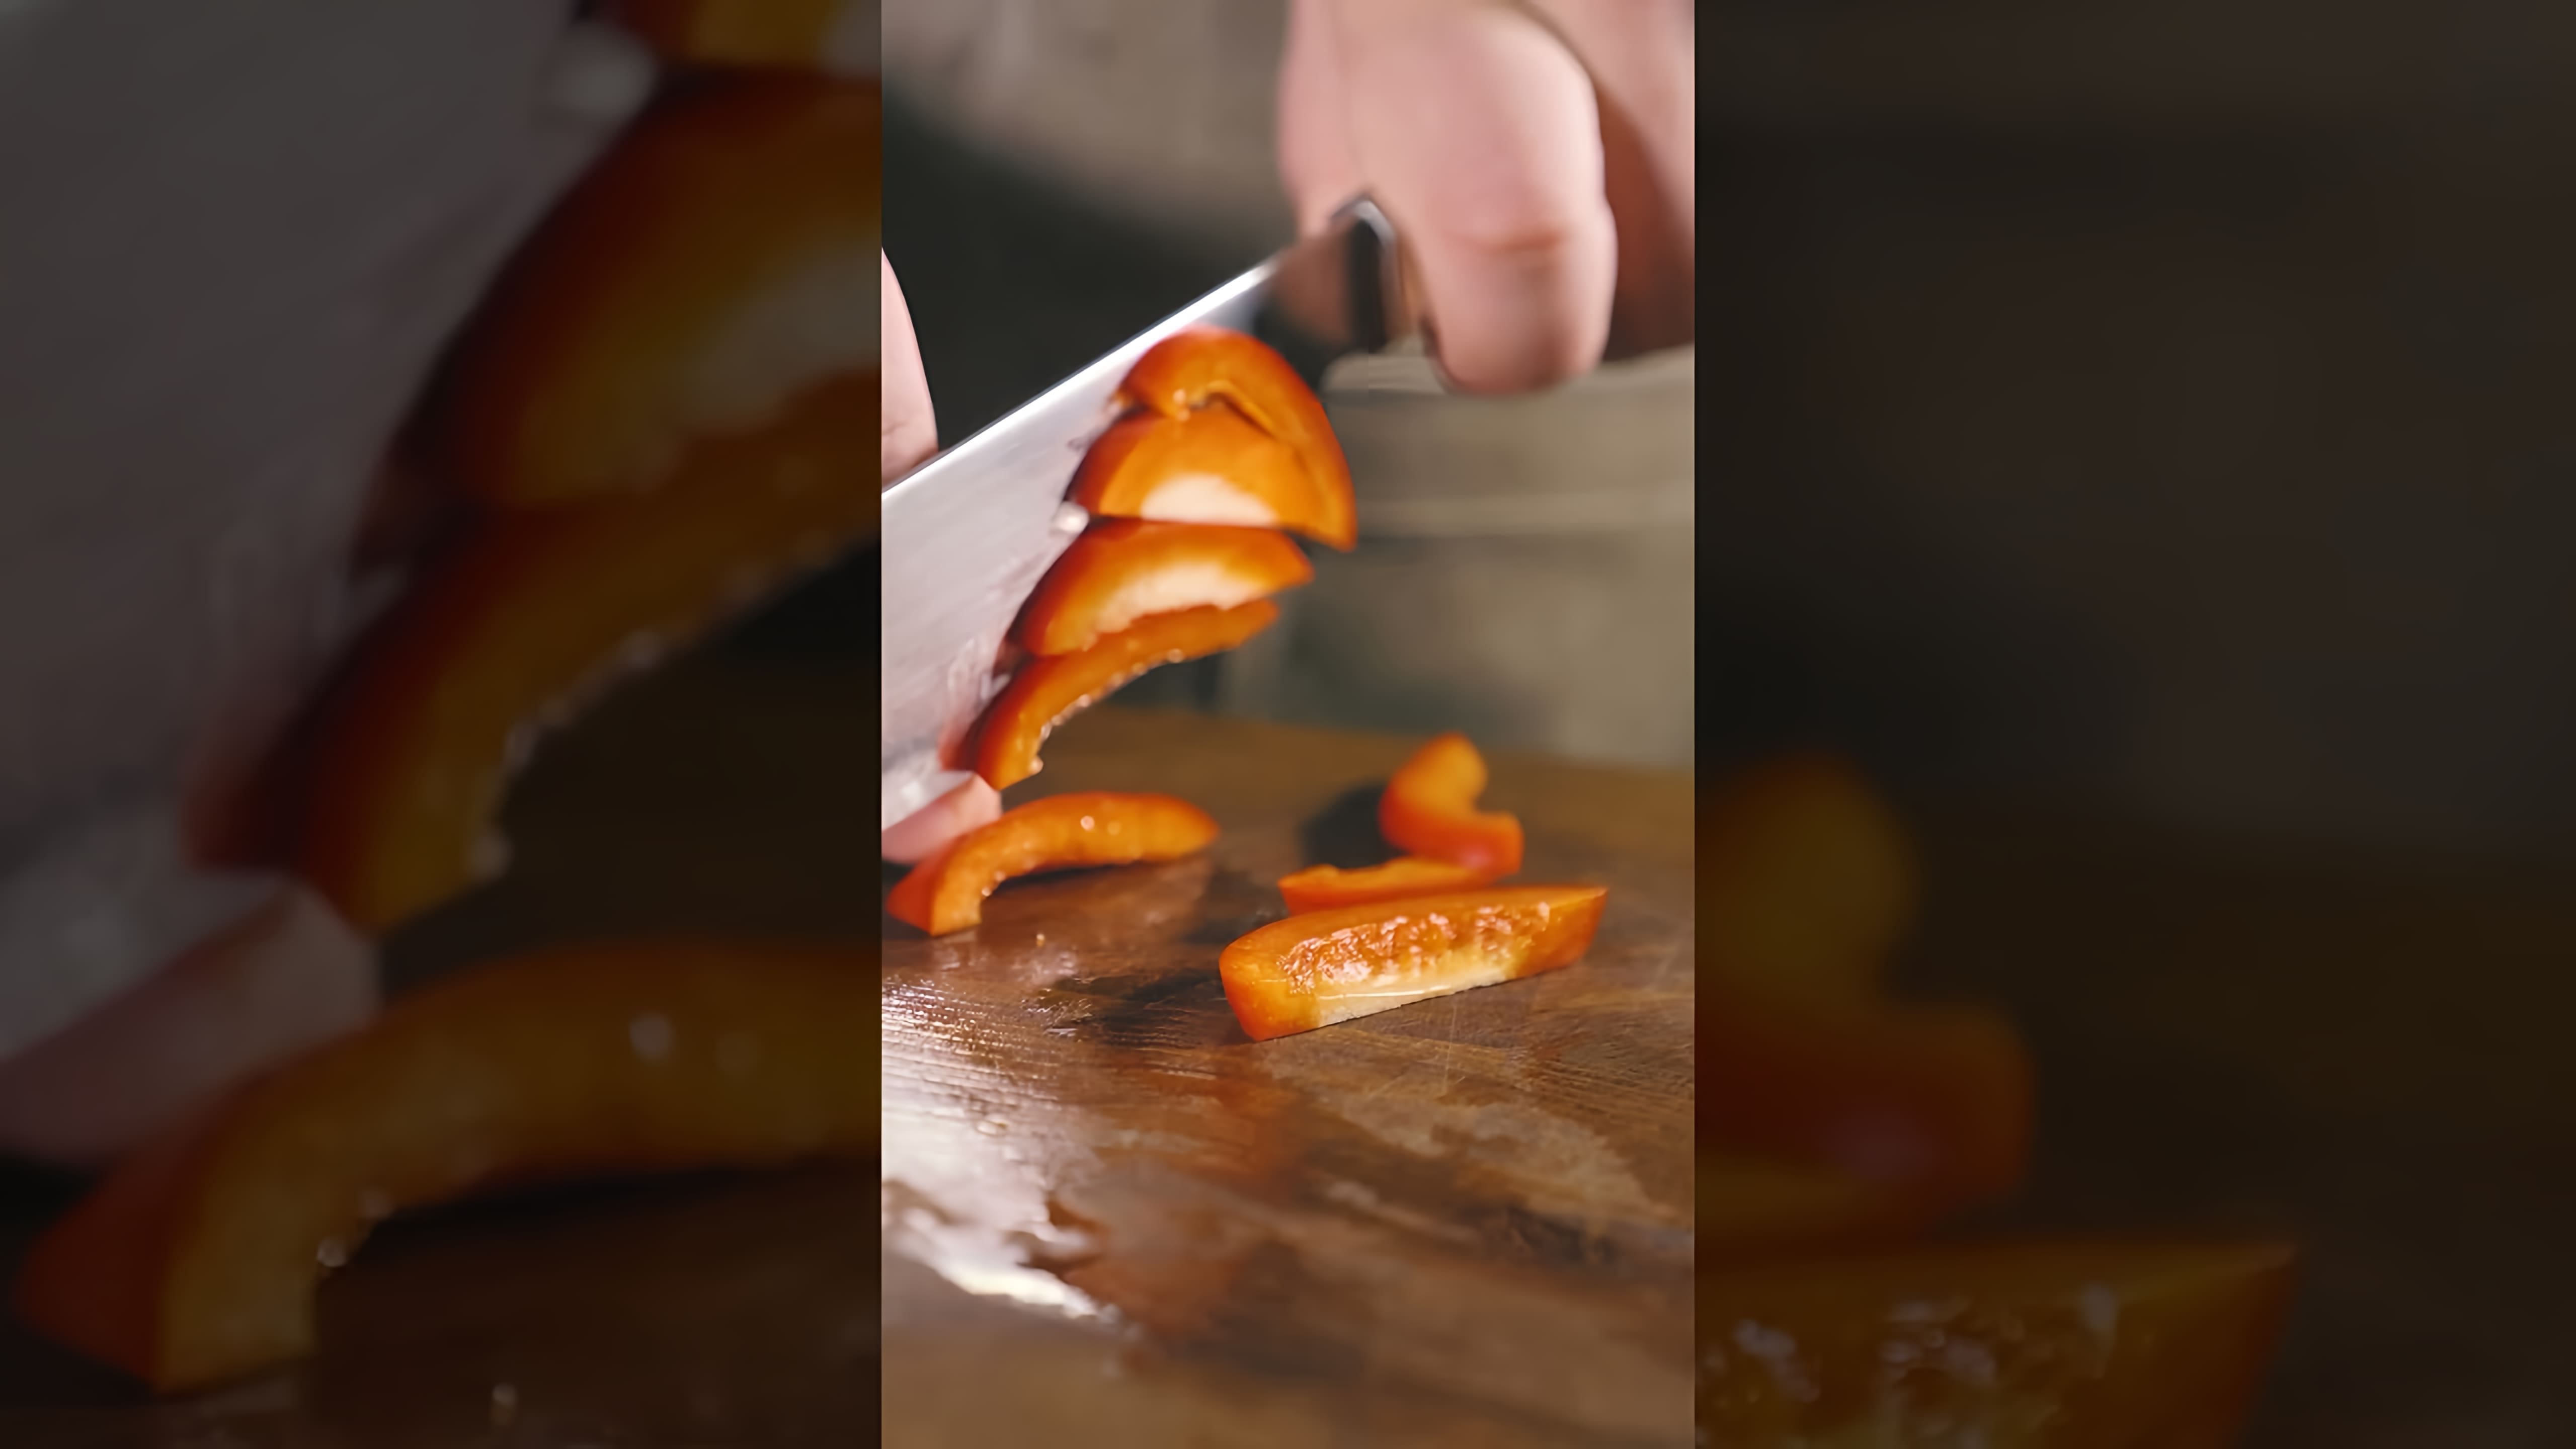 Видео: Лапша с креветками в азиатском стиле #food #еда #рецепты #new #вкусно #newvideo #new